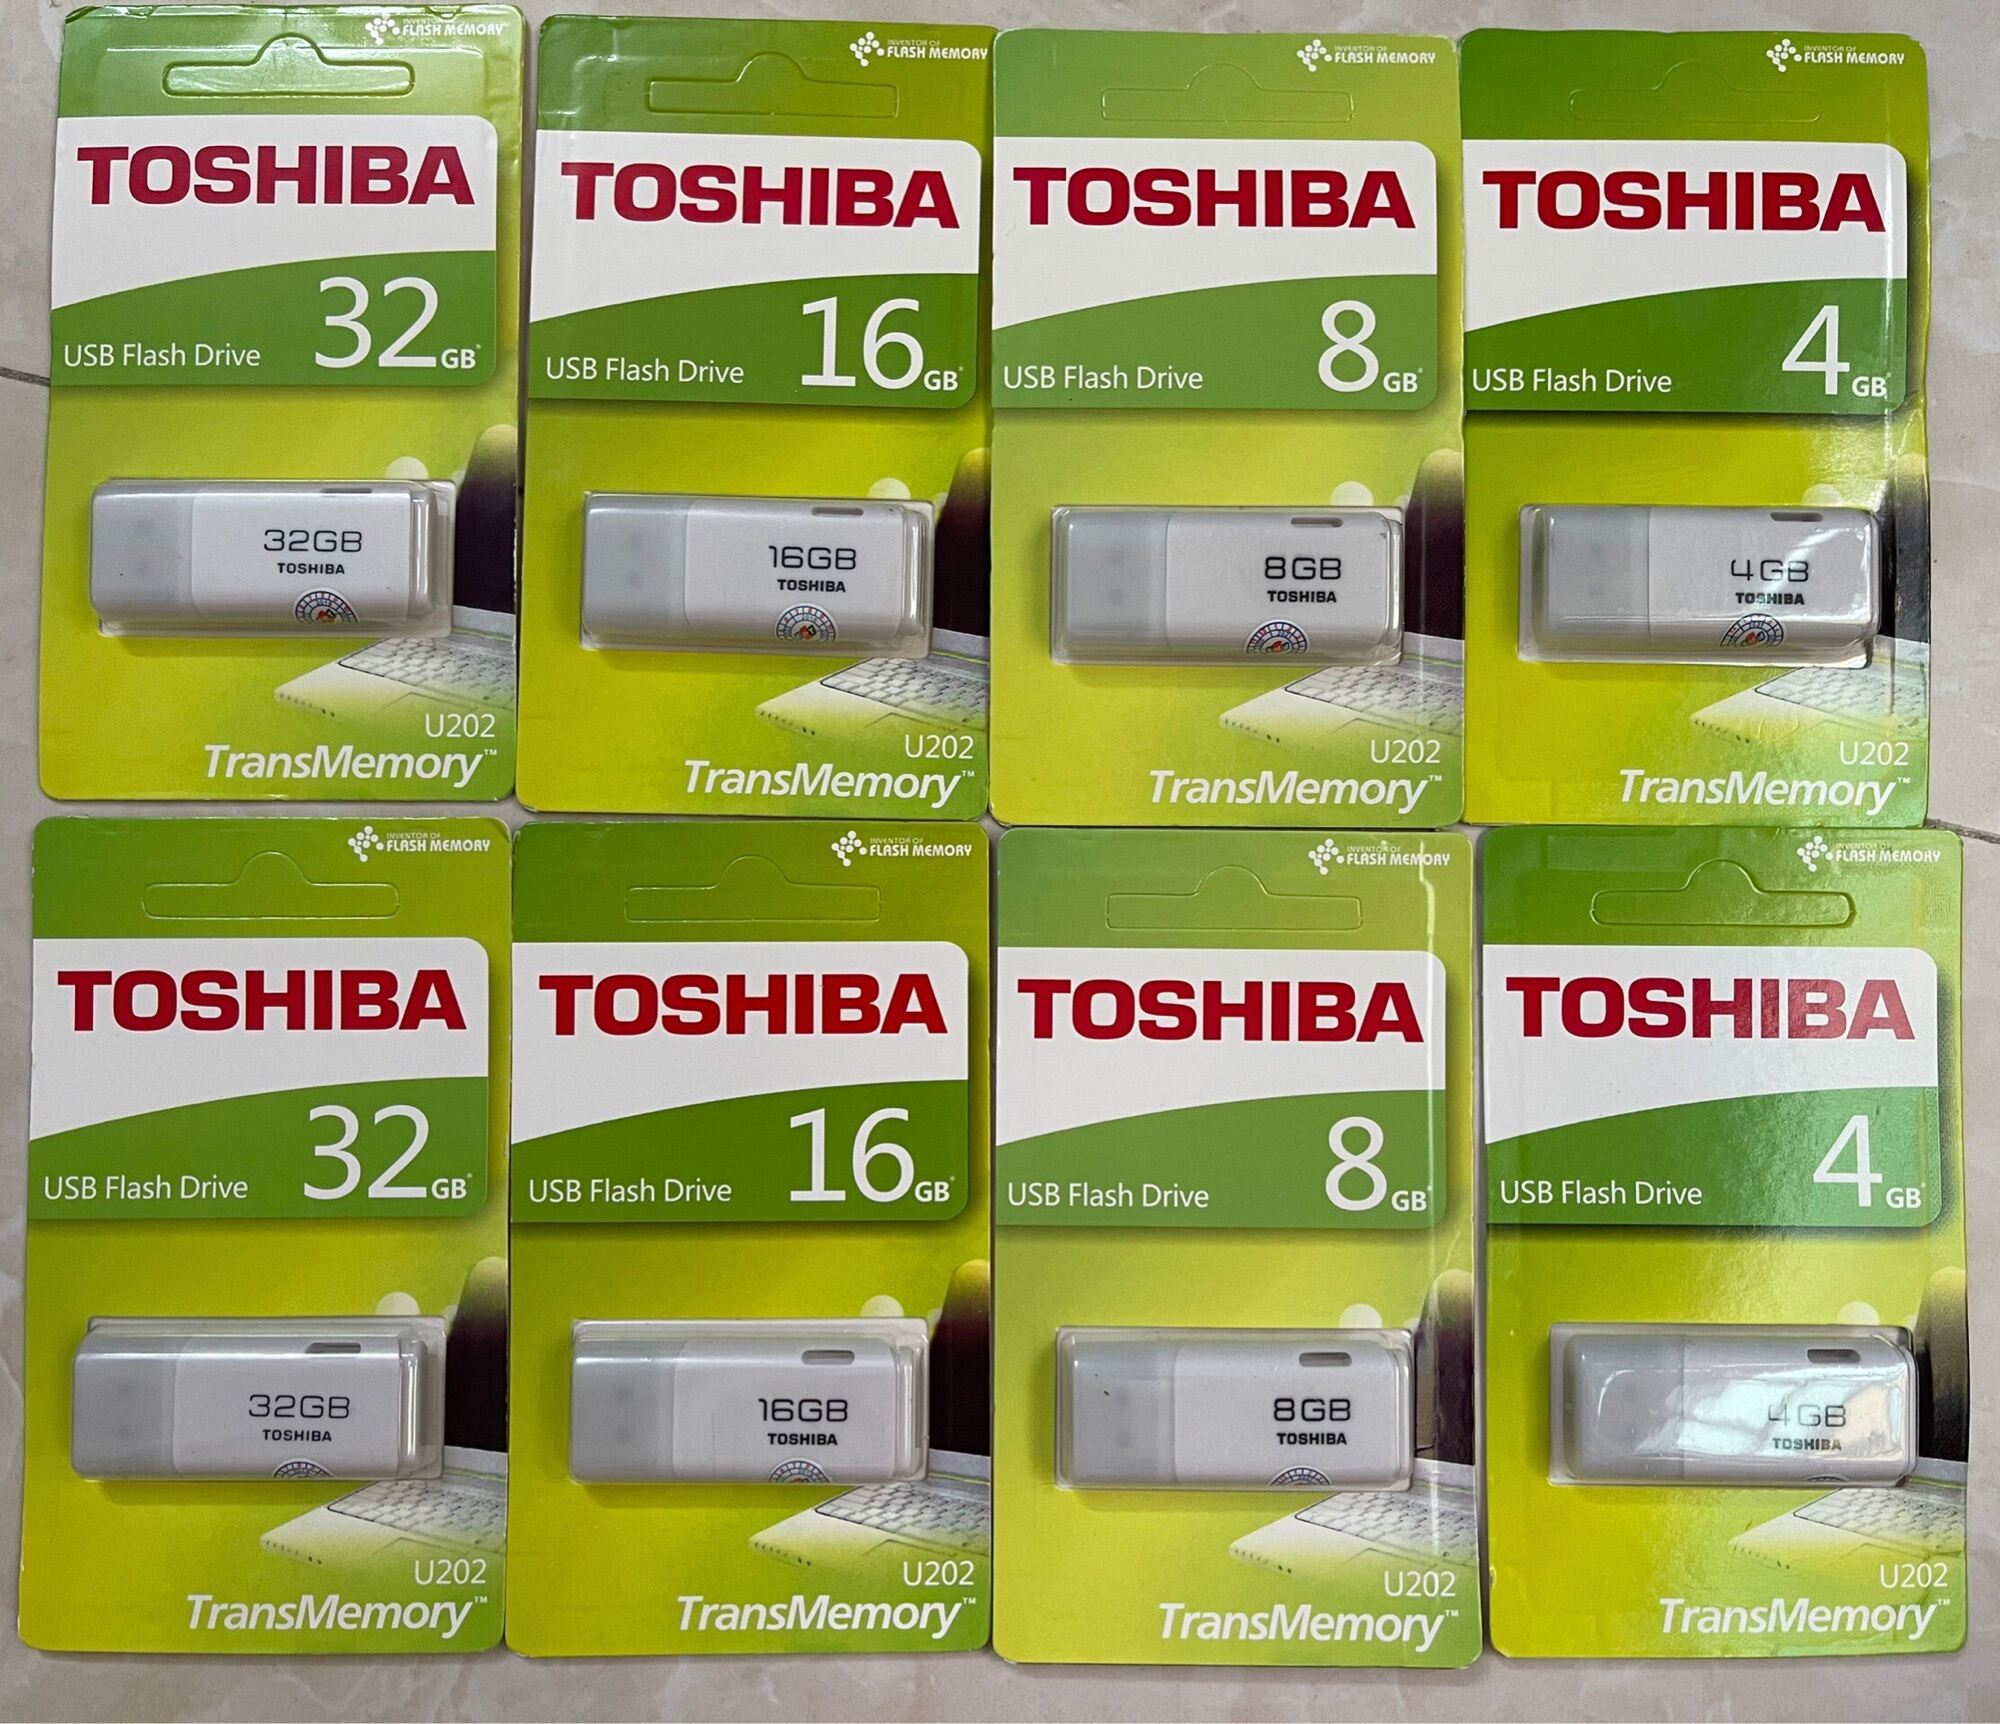 Bảng giá USB TOSHIBA VỎ NHỰA 2.0 4GB/8GB/16GB/32GB Chính Hãng - BH 12 tháng Phong Vũ